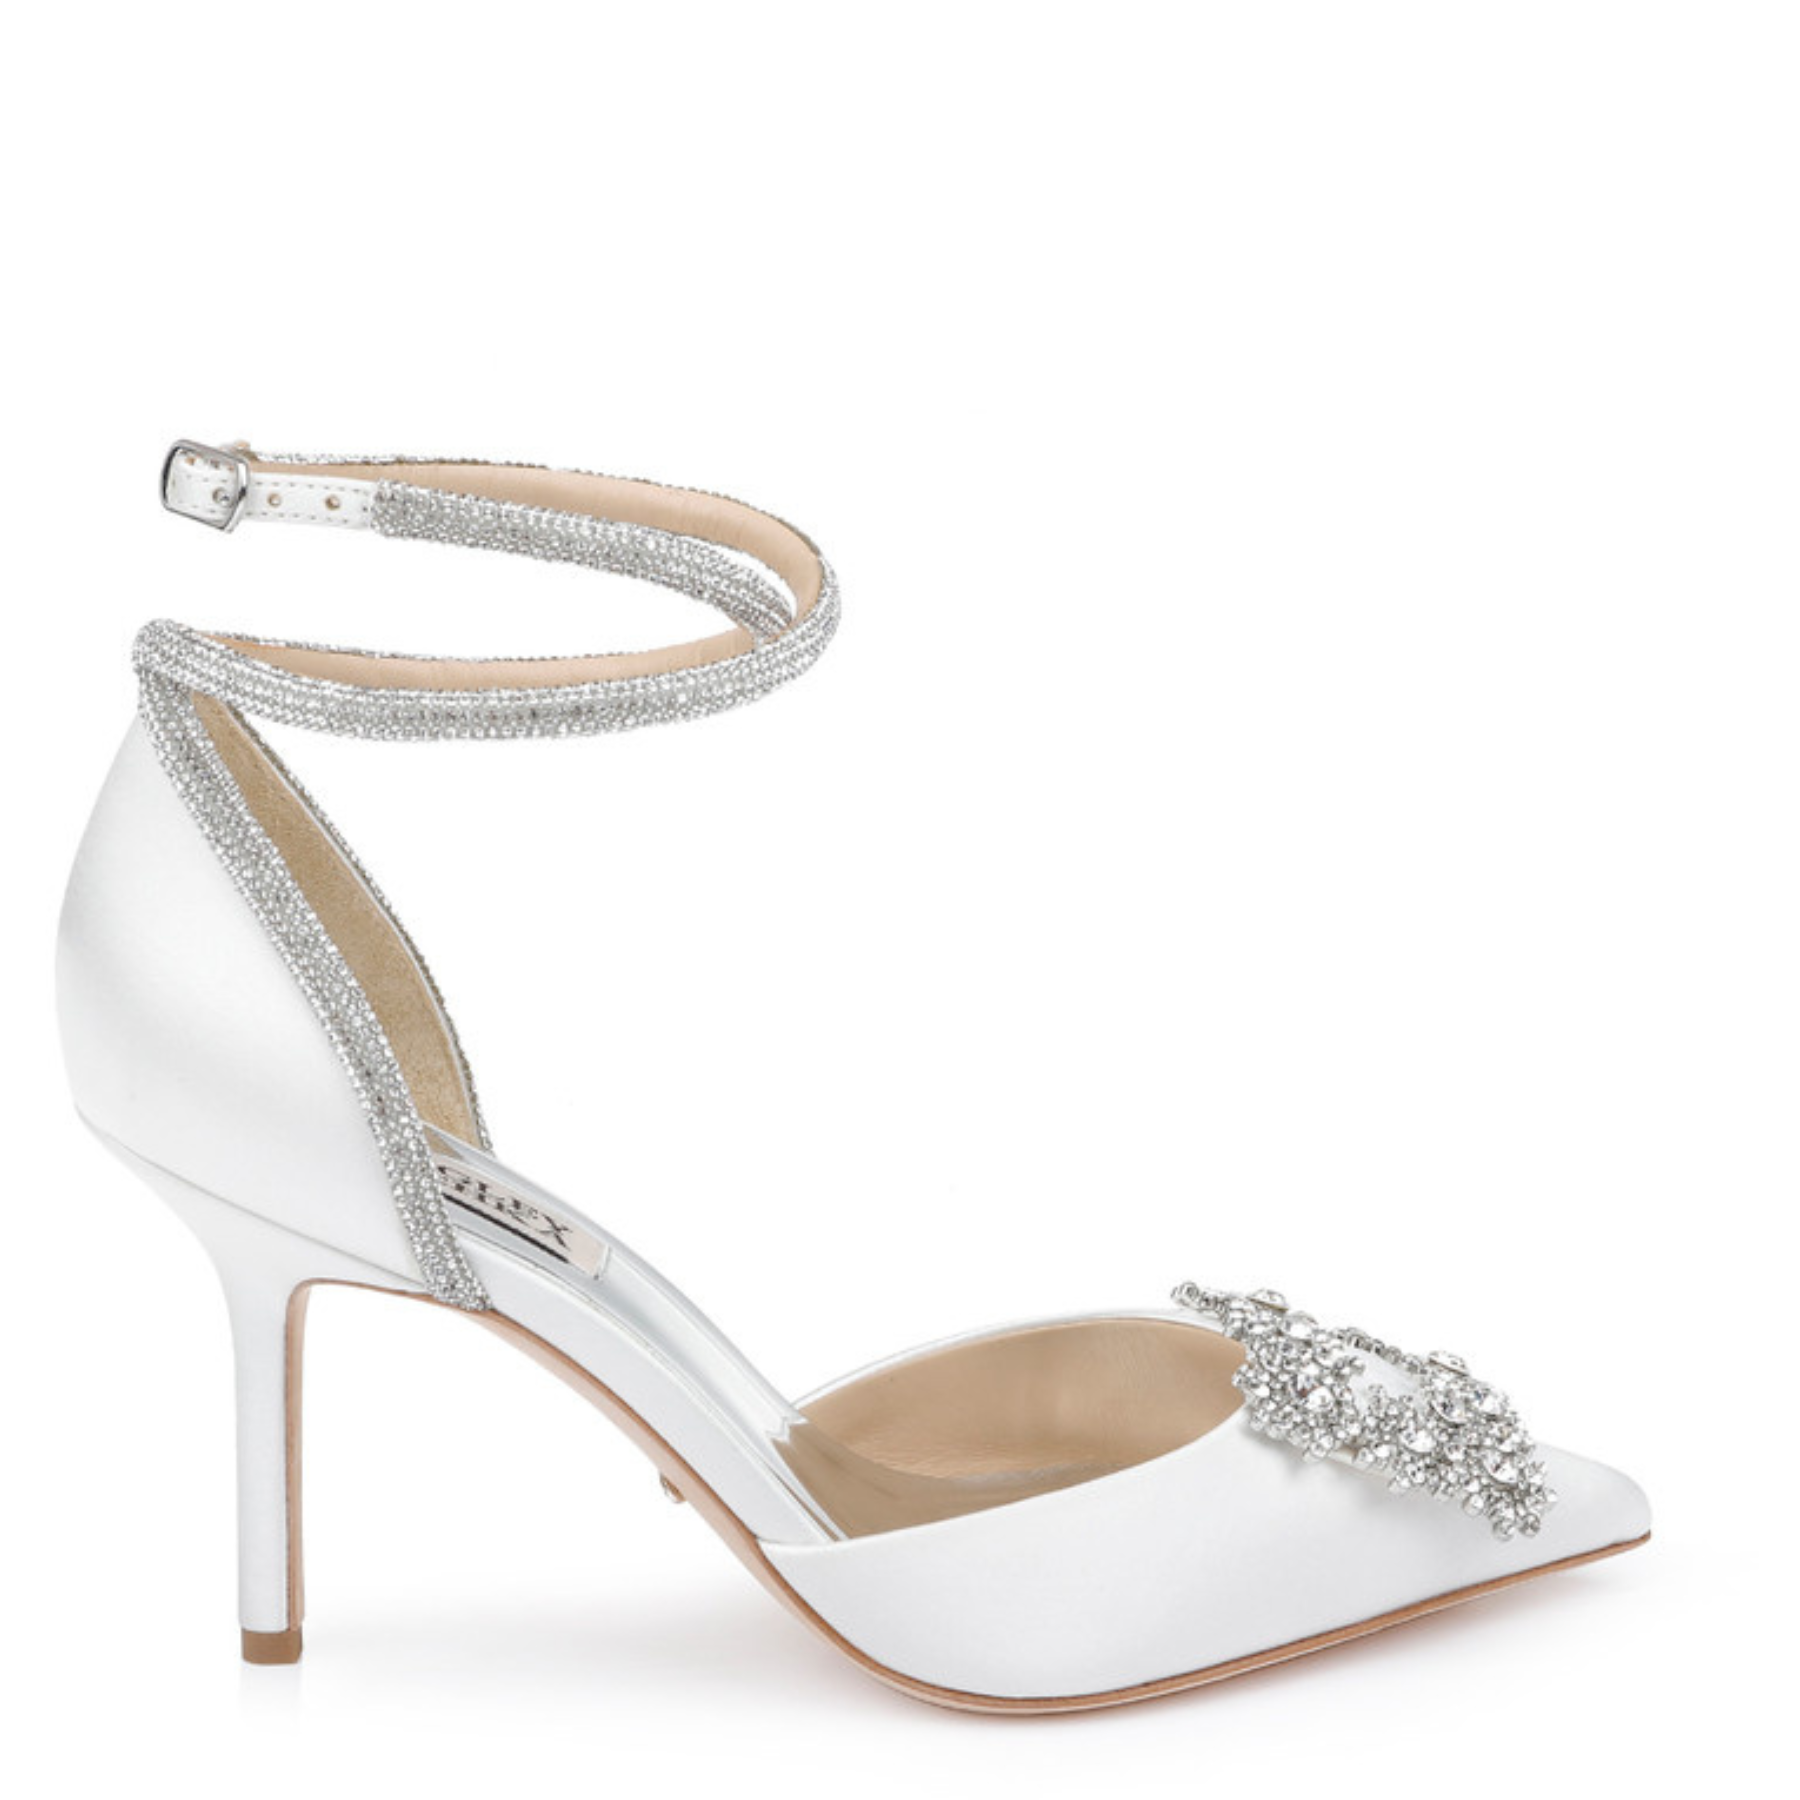 Saint - Pointed Toe Crystal Embellished Stiletto - Soft White